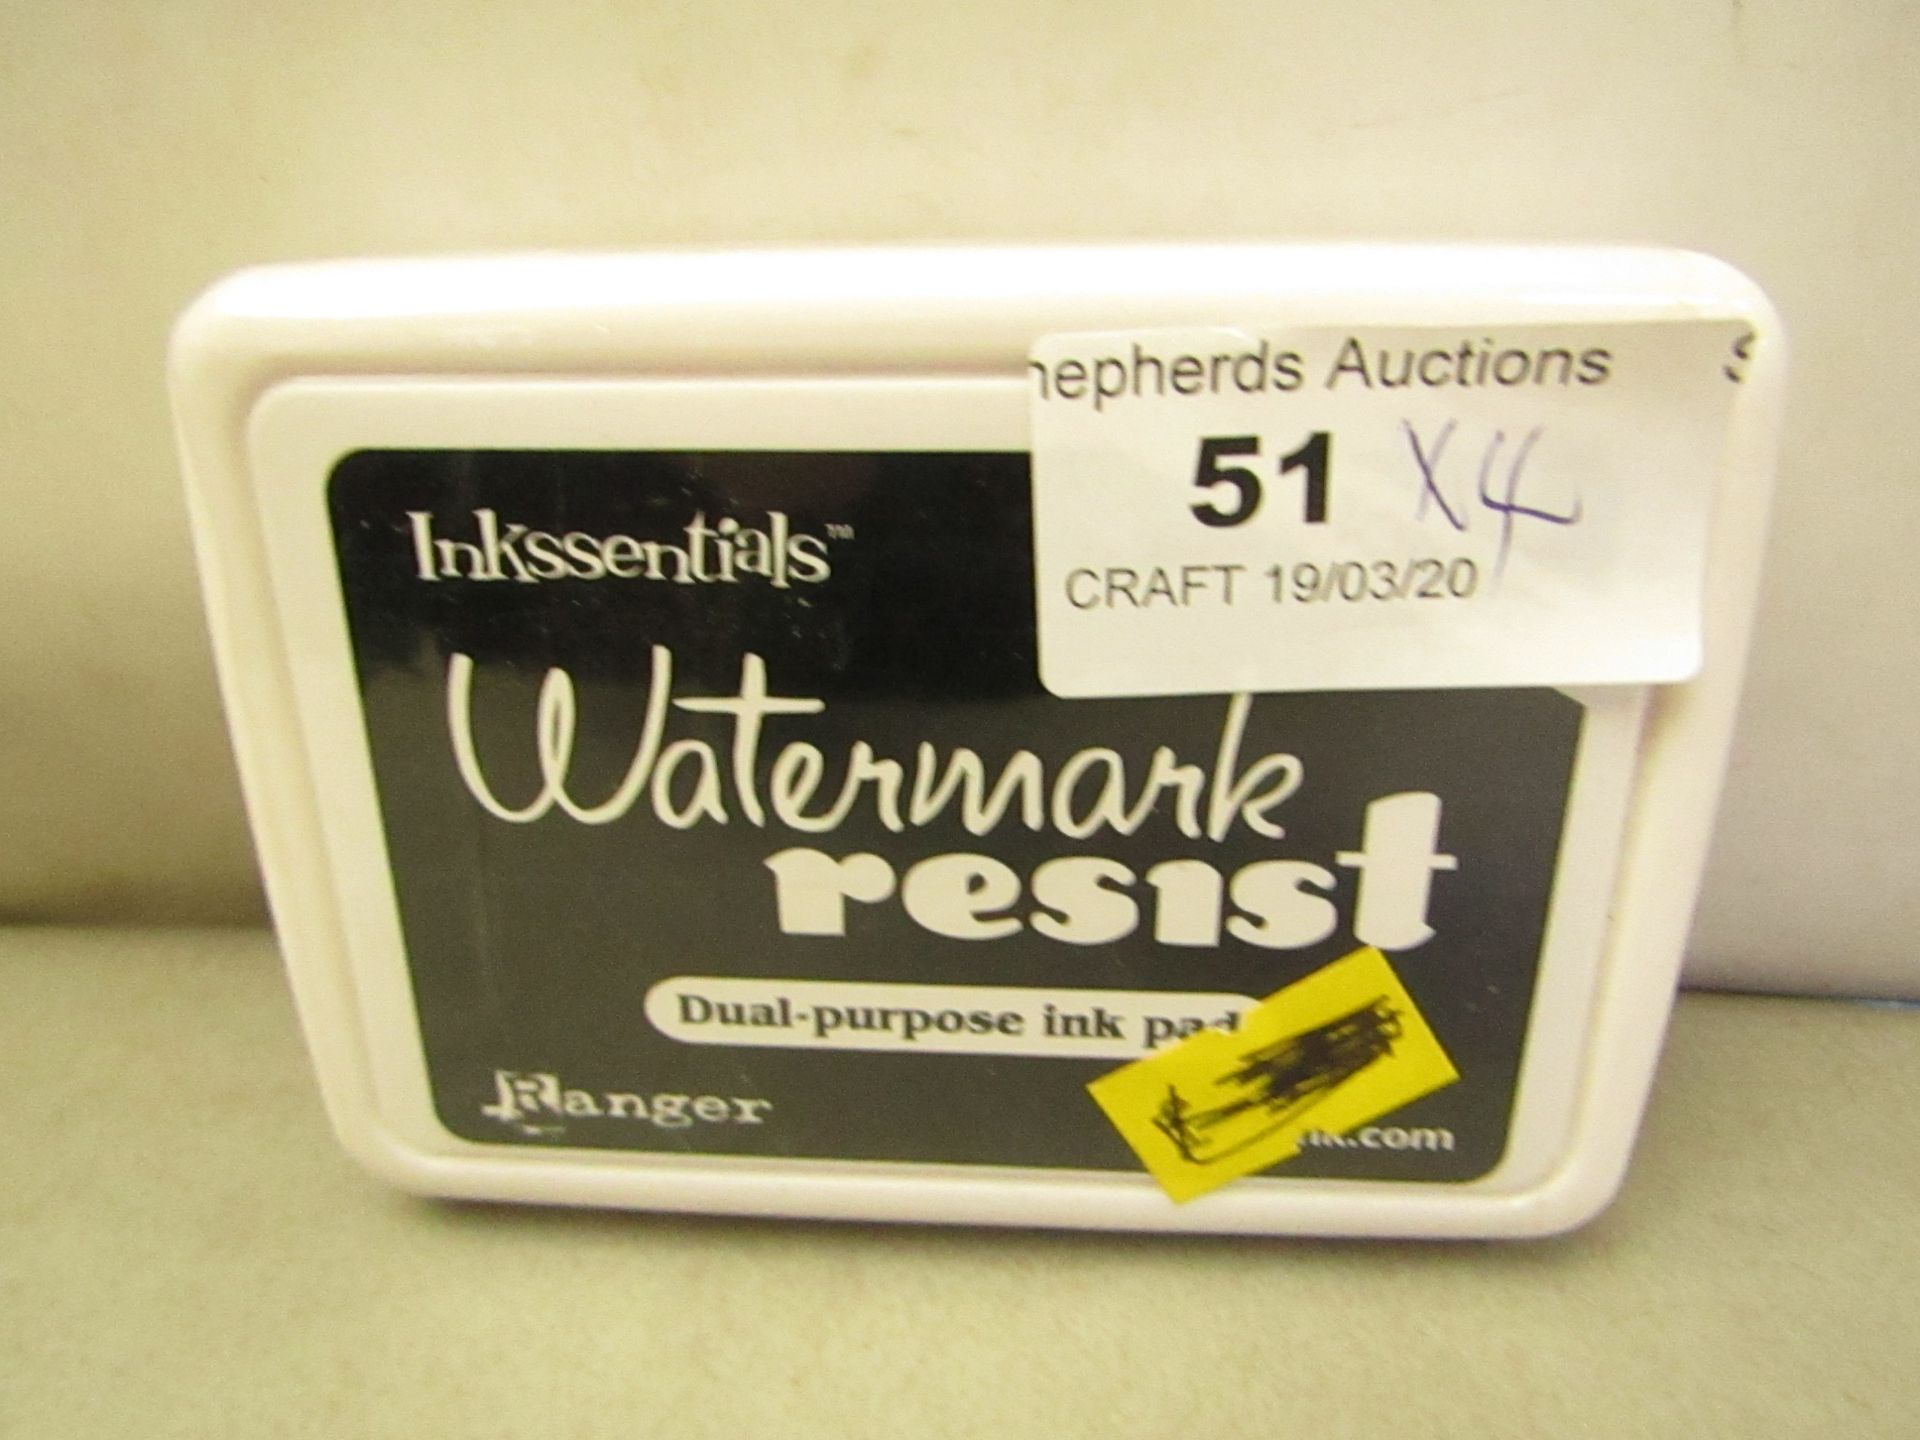 4 x Inkssentials Watermark Resist Dual-purposeInk Pads RRP £2.75 each new & sealed